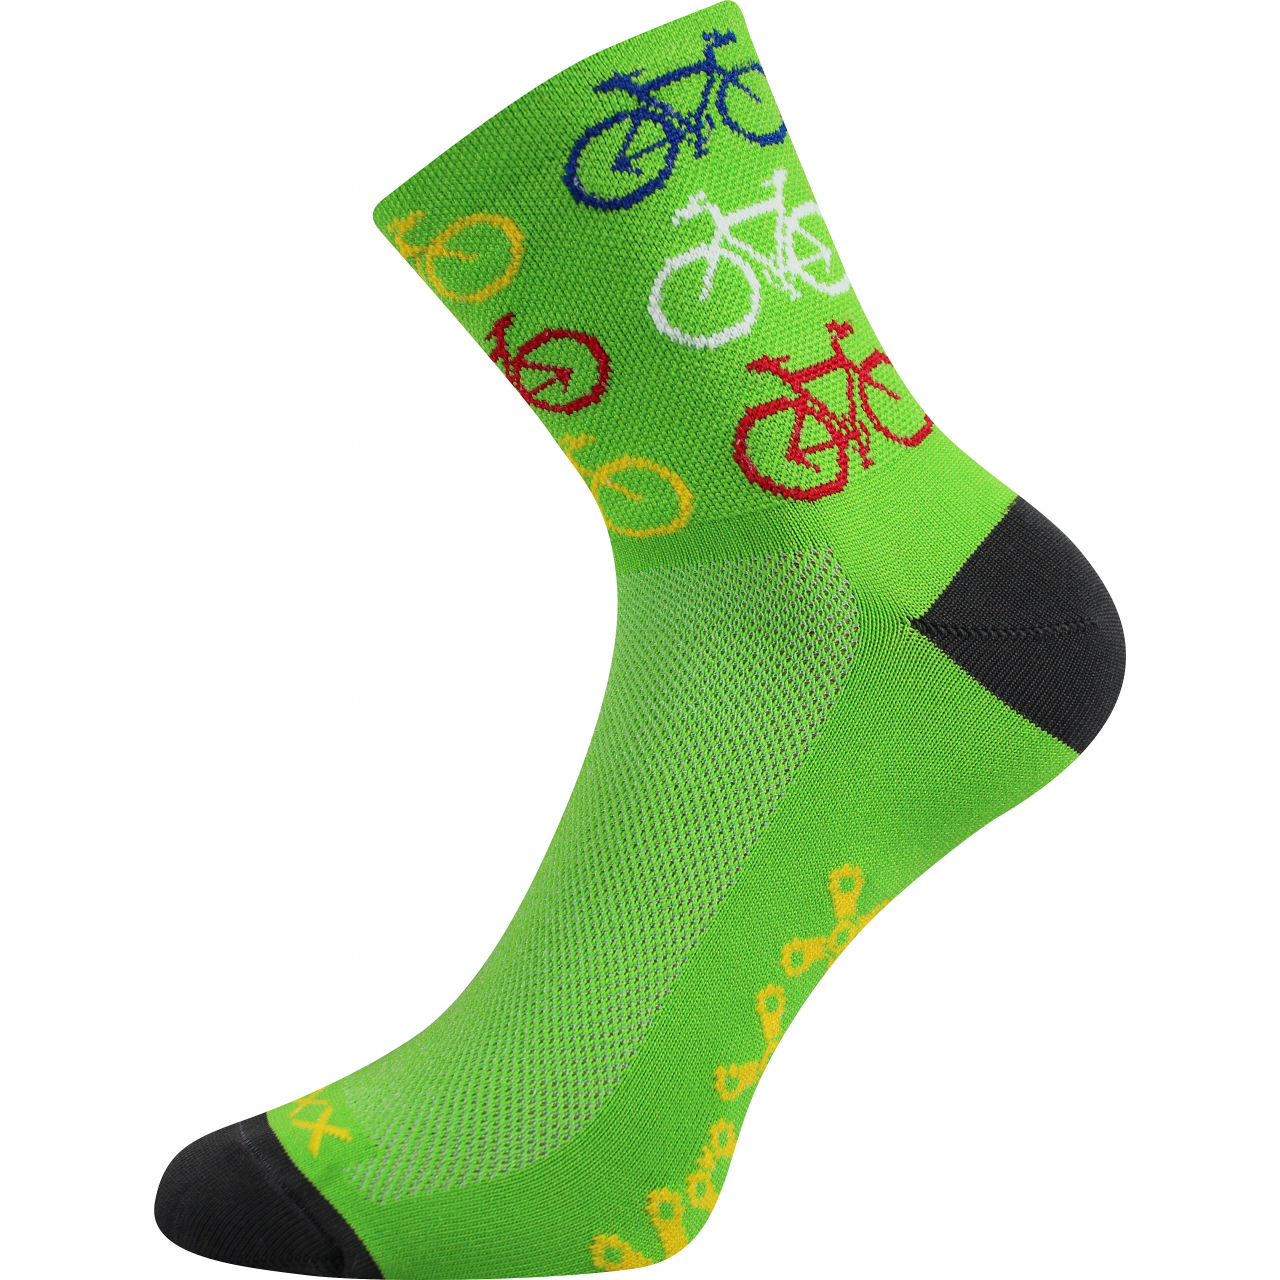 Ponožky sportovní unisex Voxx Ralf X Kola - zelené, 43-46